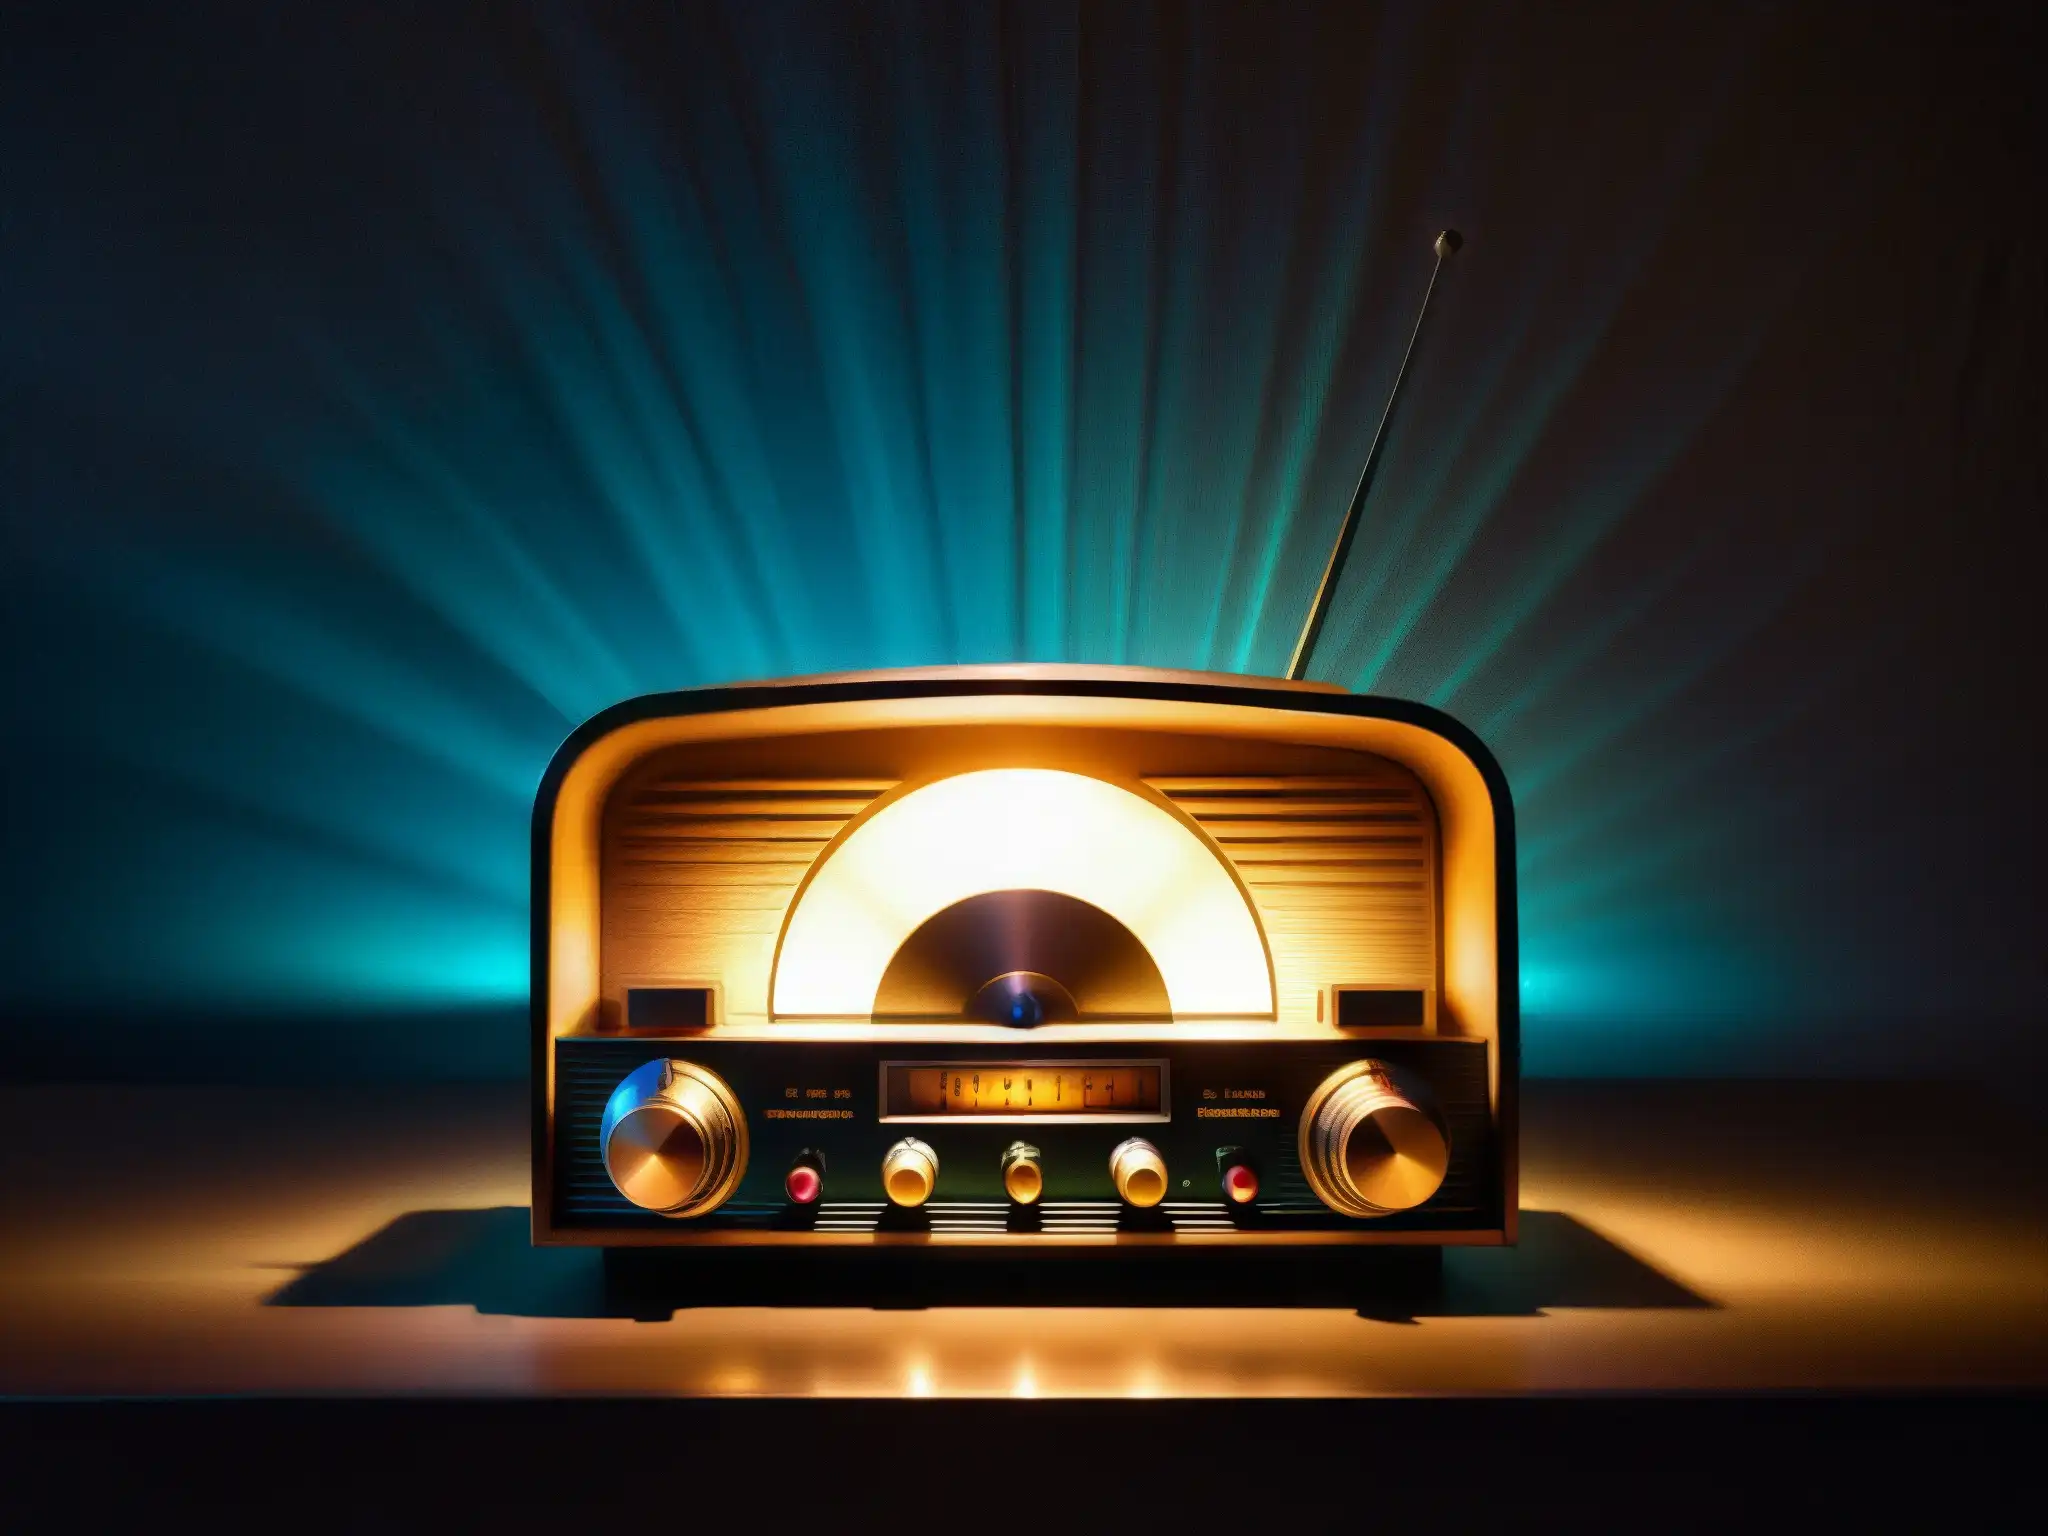 Vieja radio con luces parpadeantes y ondas estáticas, evocando misteriosas transmisiones de fantasmas en radios y TV